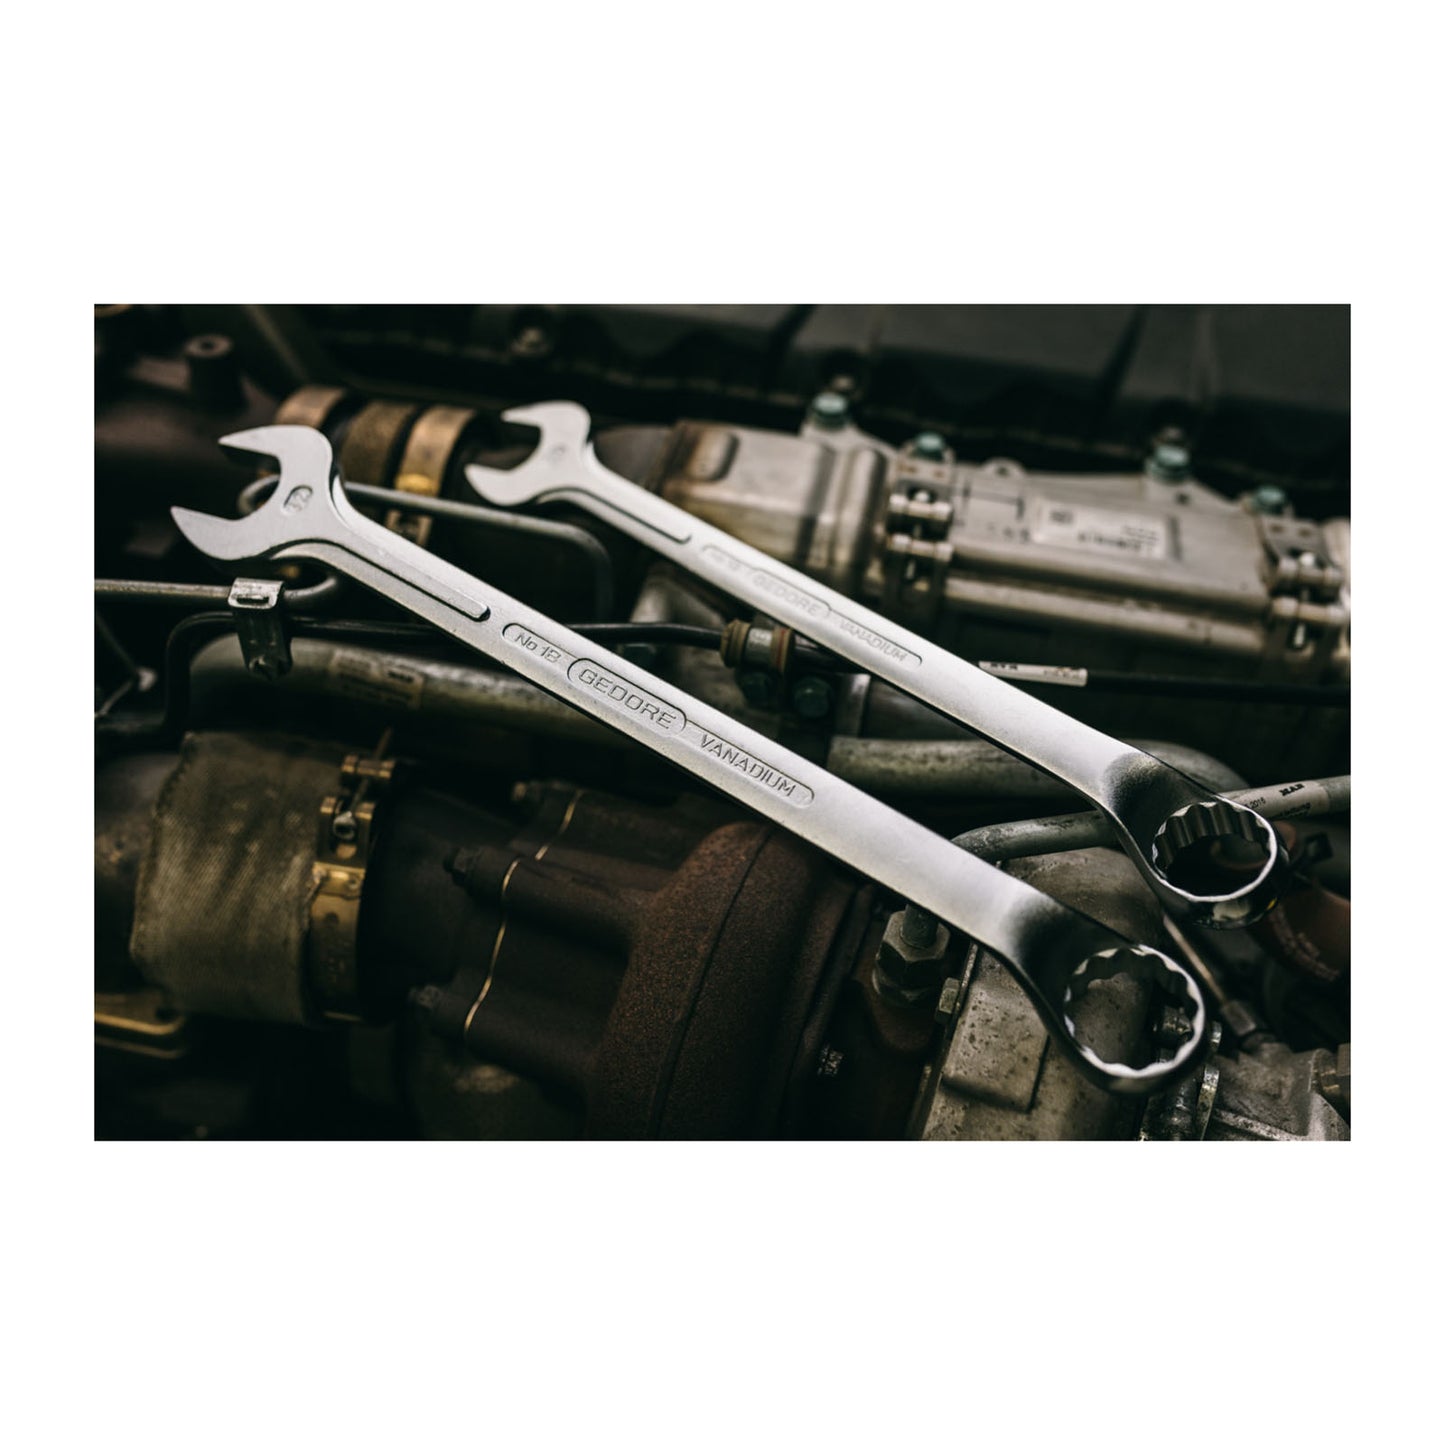 GEDORE 1 B 3/8AF - Offset Combination Wrench, 3/8AF (6005390)